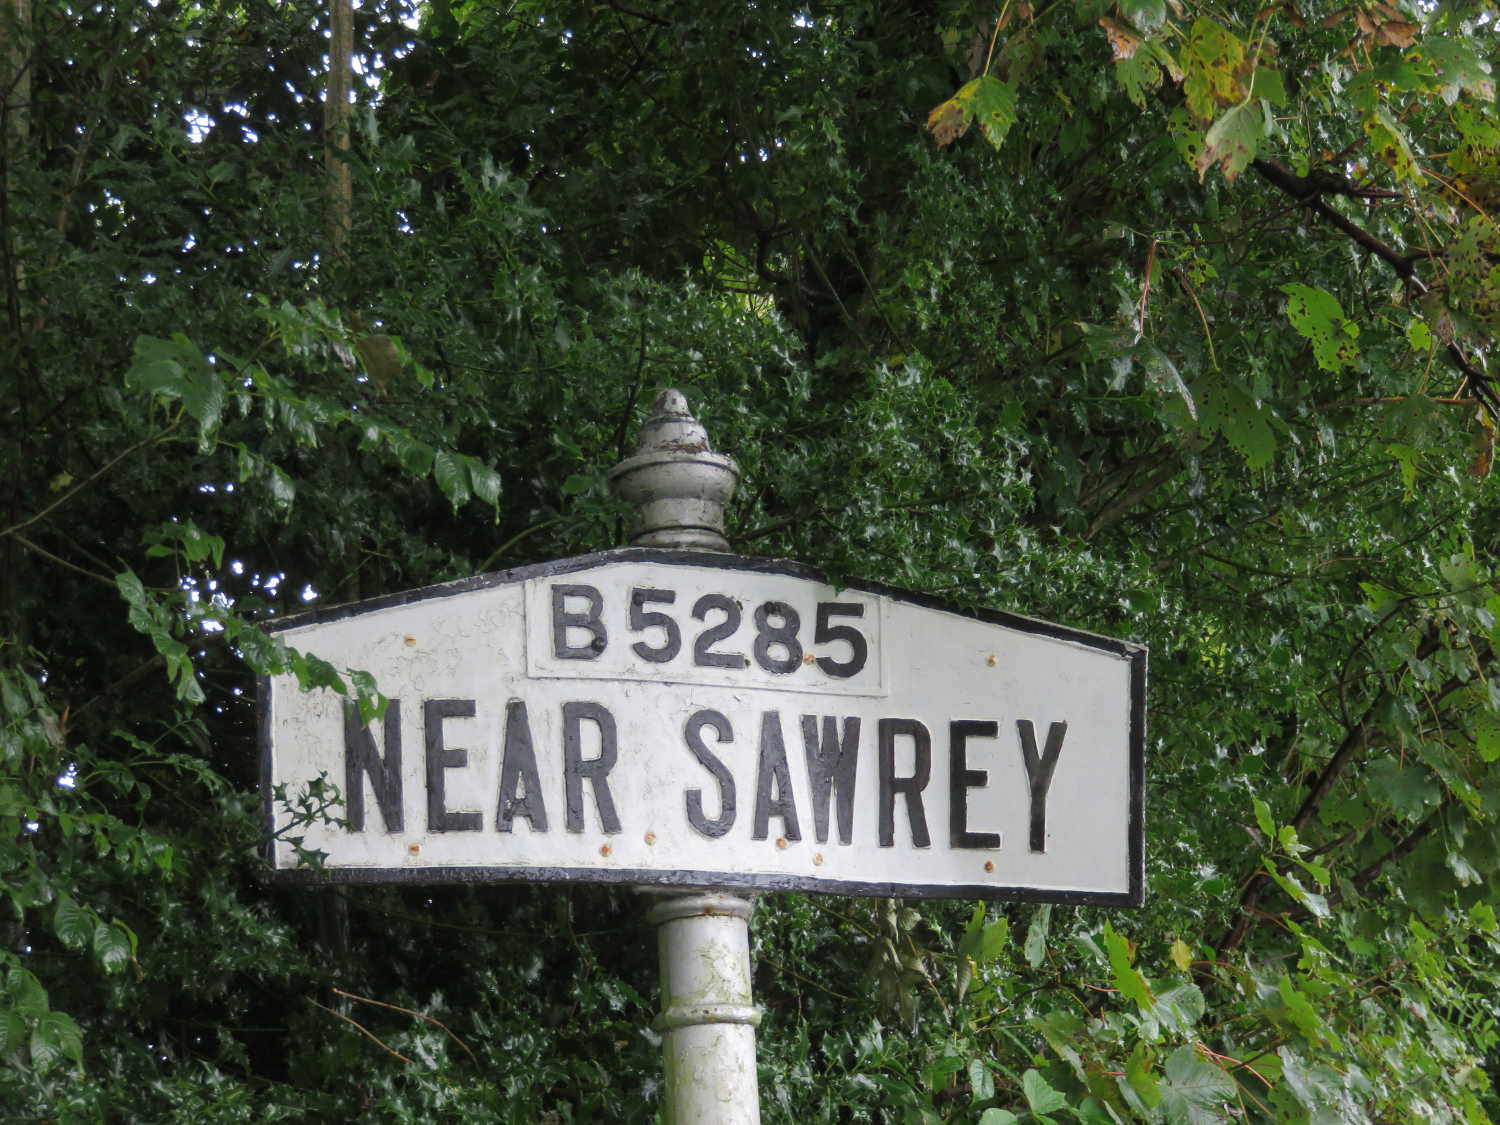 Near Sawrey sign